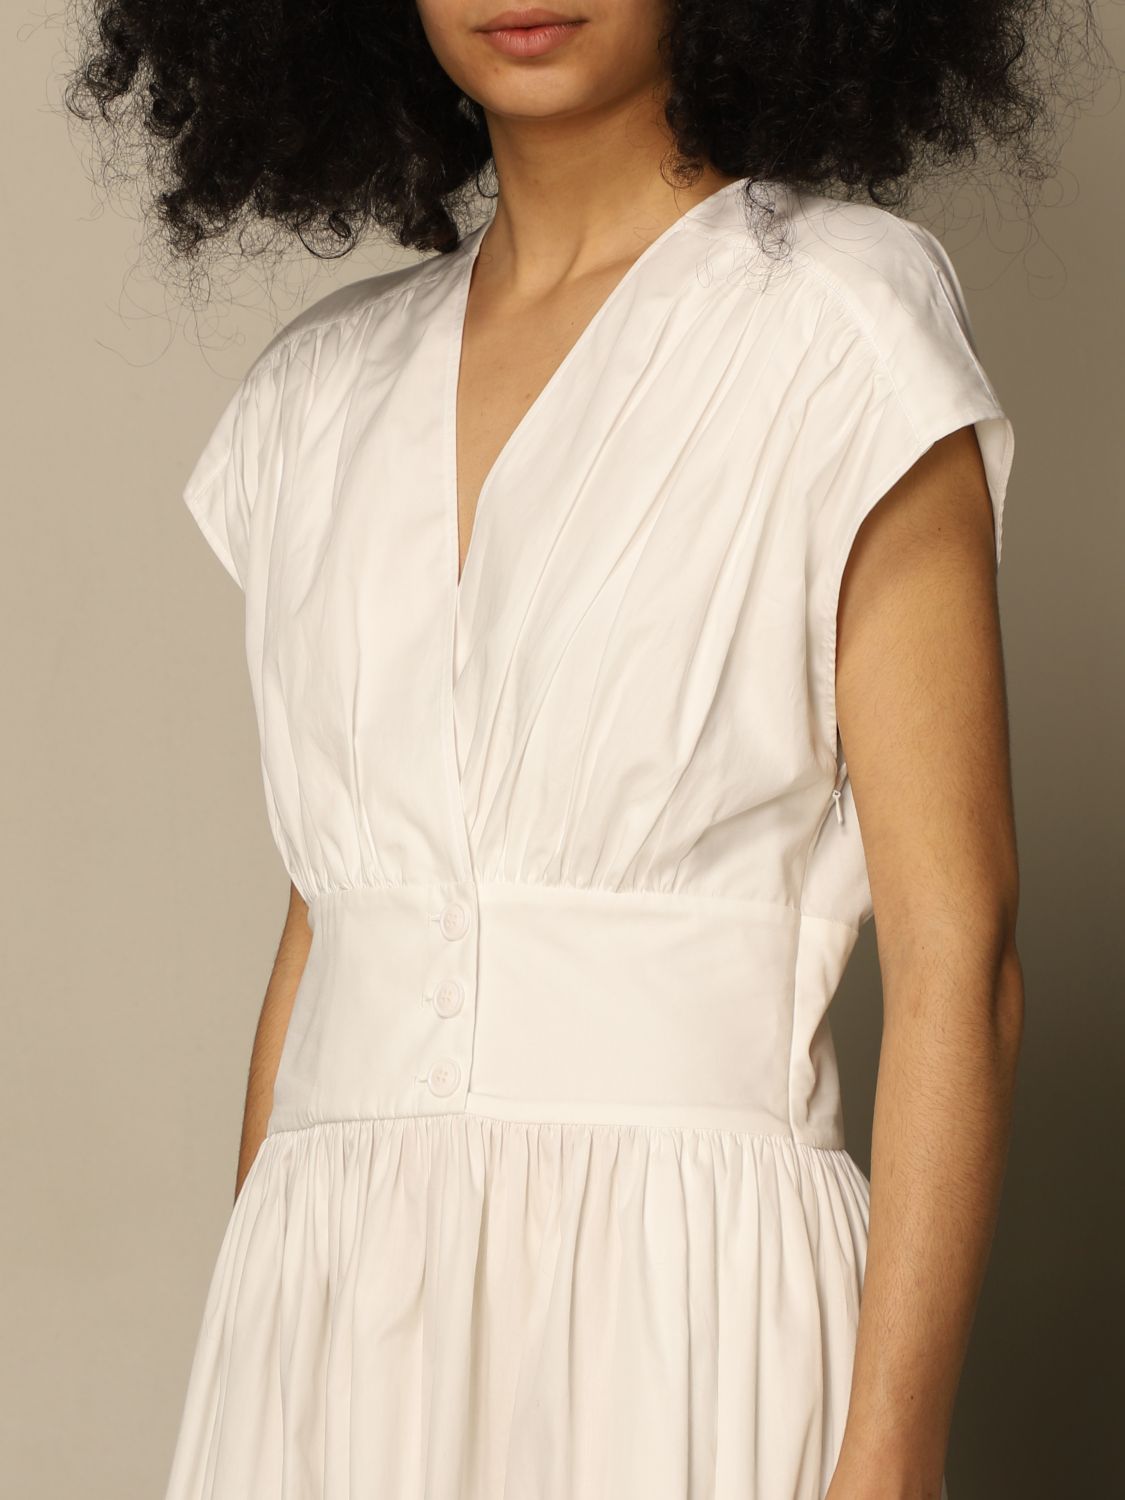 Buy > white half sleeve dress > in stock